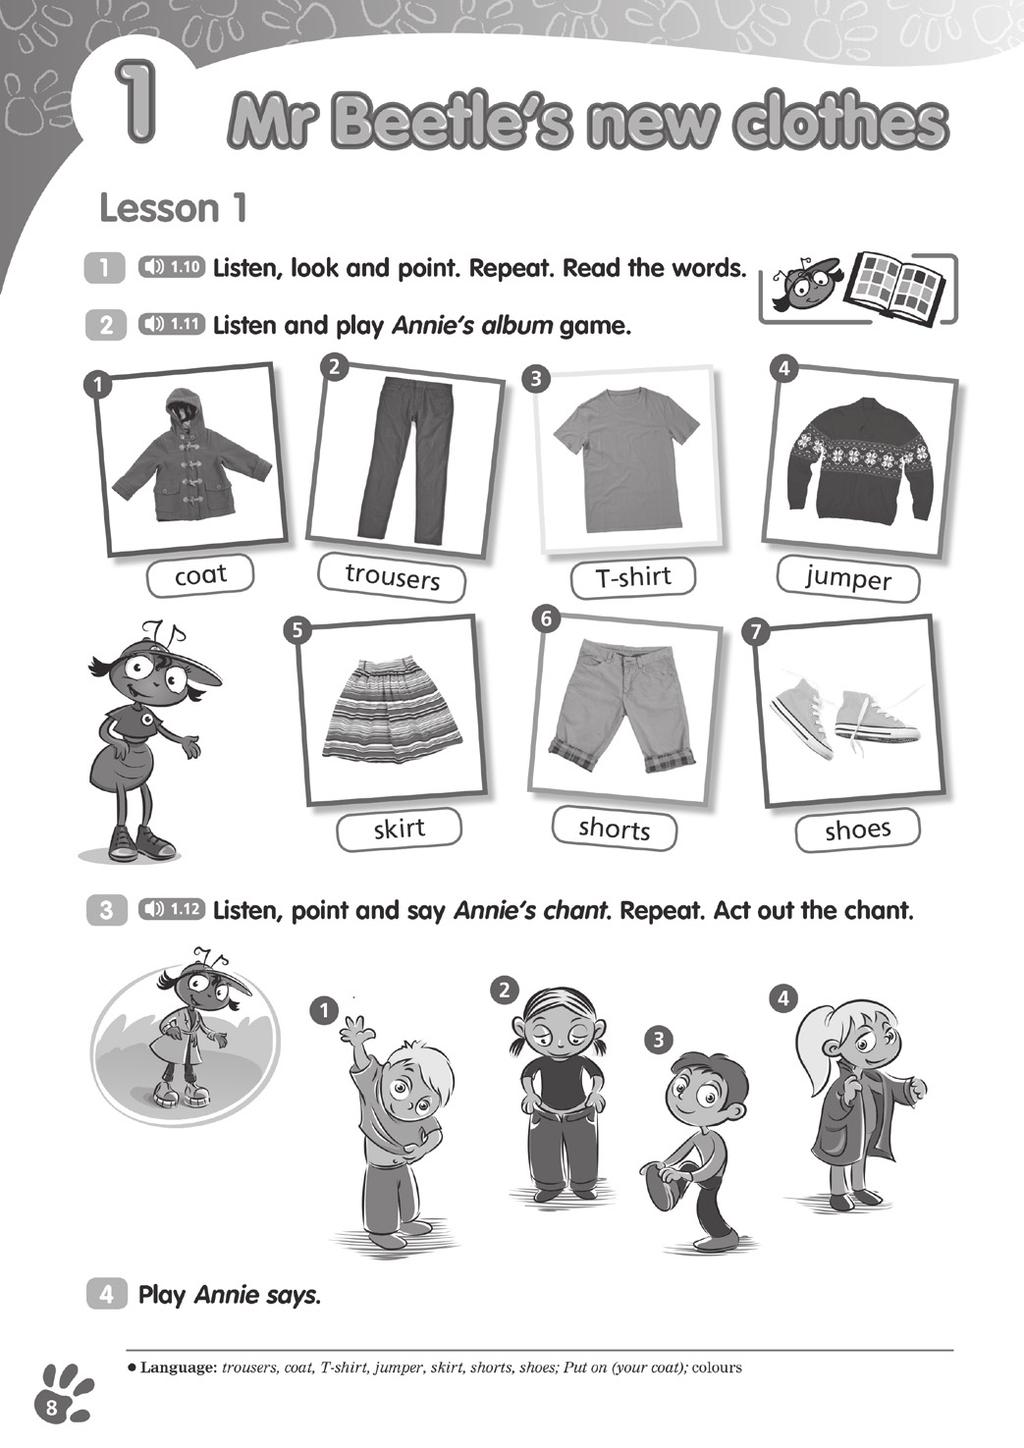 1 Mr Beetle s e new clothes Lekcja 1 Cele: rozpoznawanie i nazywanie ubrań; rozpoznawanie wyrazów; mówienie rymowanki Główne słownictwo i struktury: coat, trousers, T-shirt, jumper, skirt, shorts,